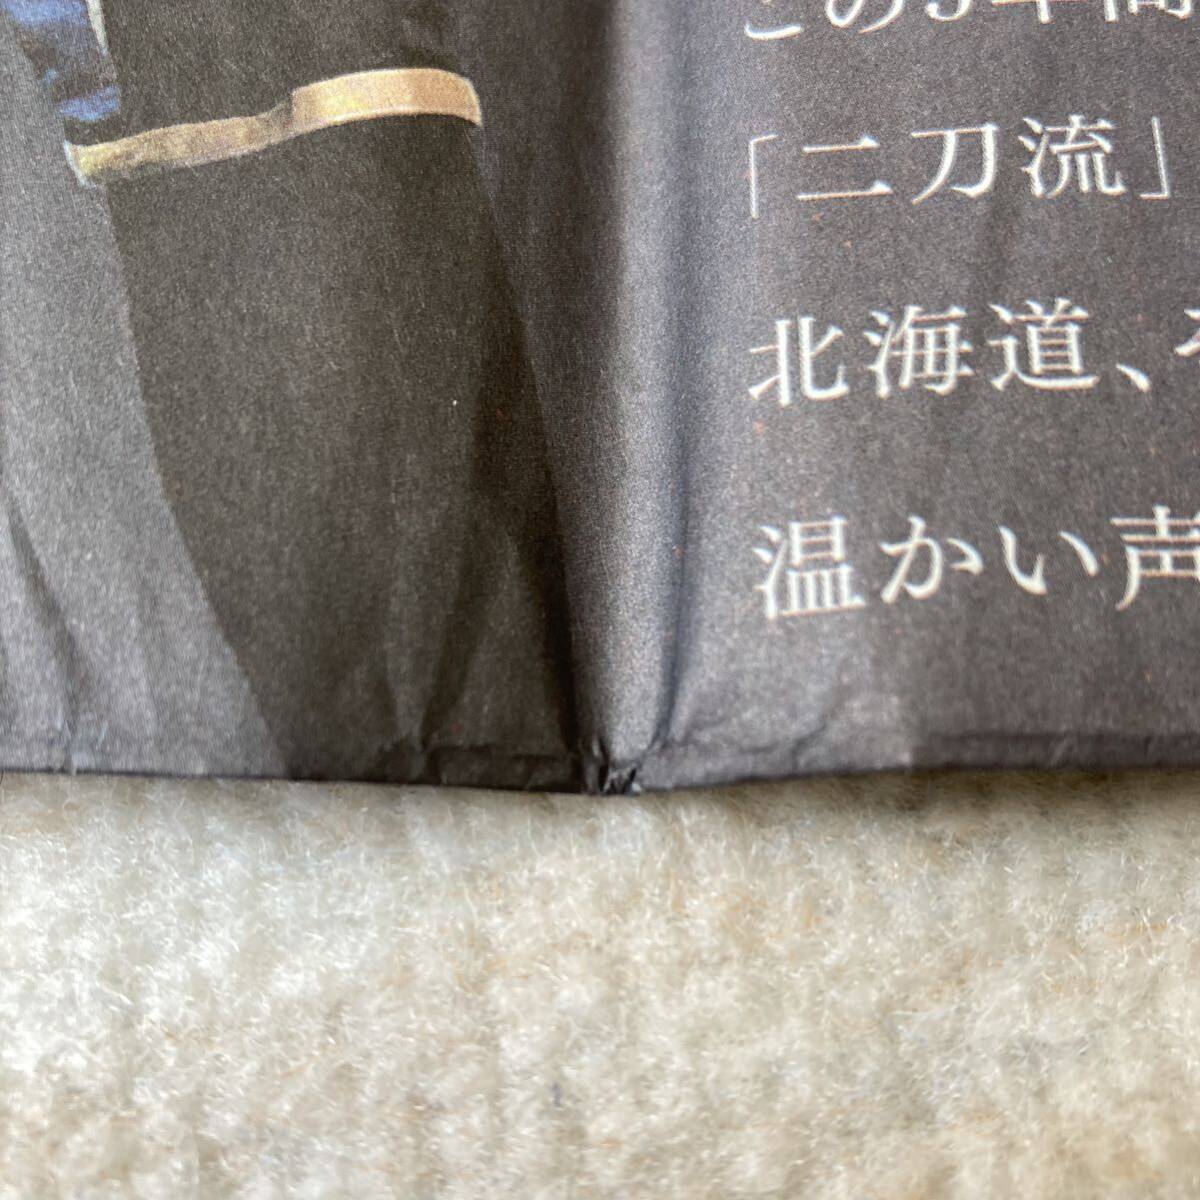 大谷翔平 北海道日本ハムファイターズ 2017年12月28日 北海道新聞 全面広告 四つ折り 野球_画像5